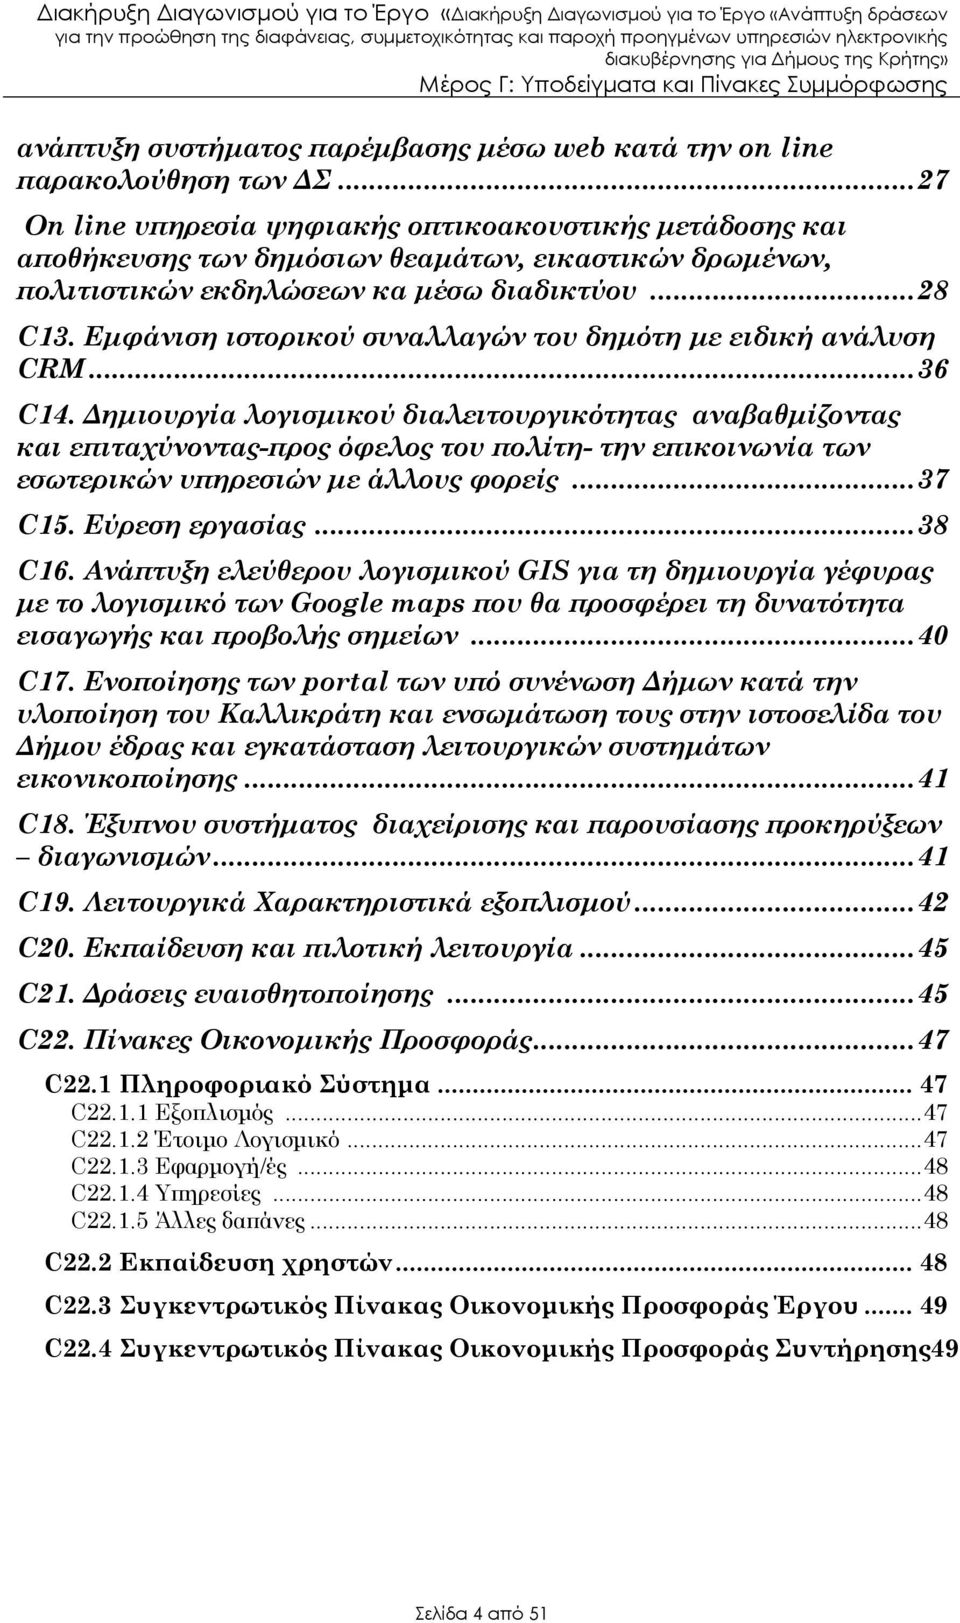 Εµφάνιση ιστορικού συναλλαγών του δηµότη µε ειδική ανάλυση CRM...36 C14.